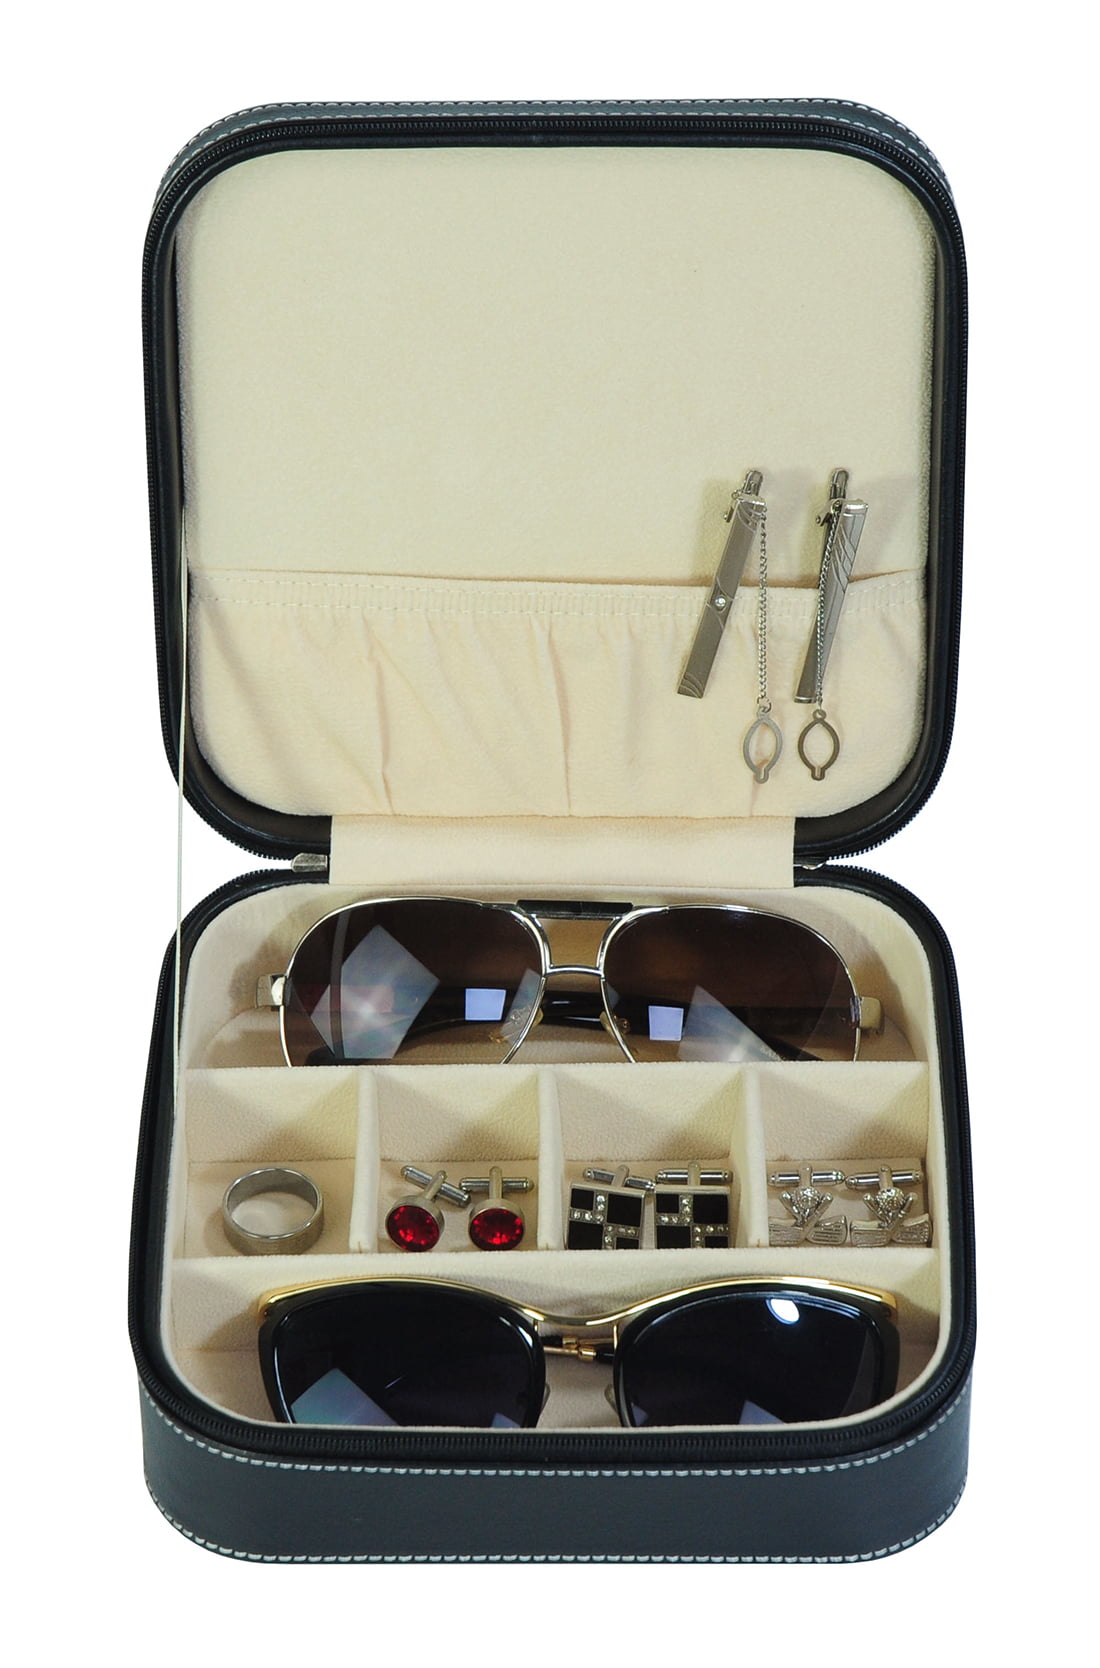  CASE ELEGANCE Saffiano Leather Travel Jewelry Case, Versatile  Travel Jewelry Storage Case, Compact & Stylish Jewelry Organizer